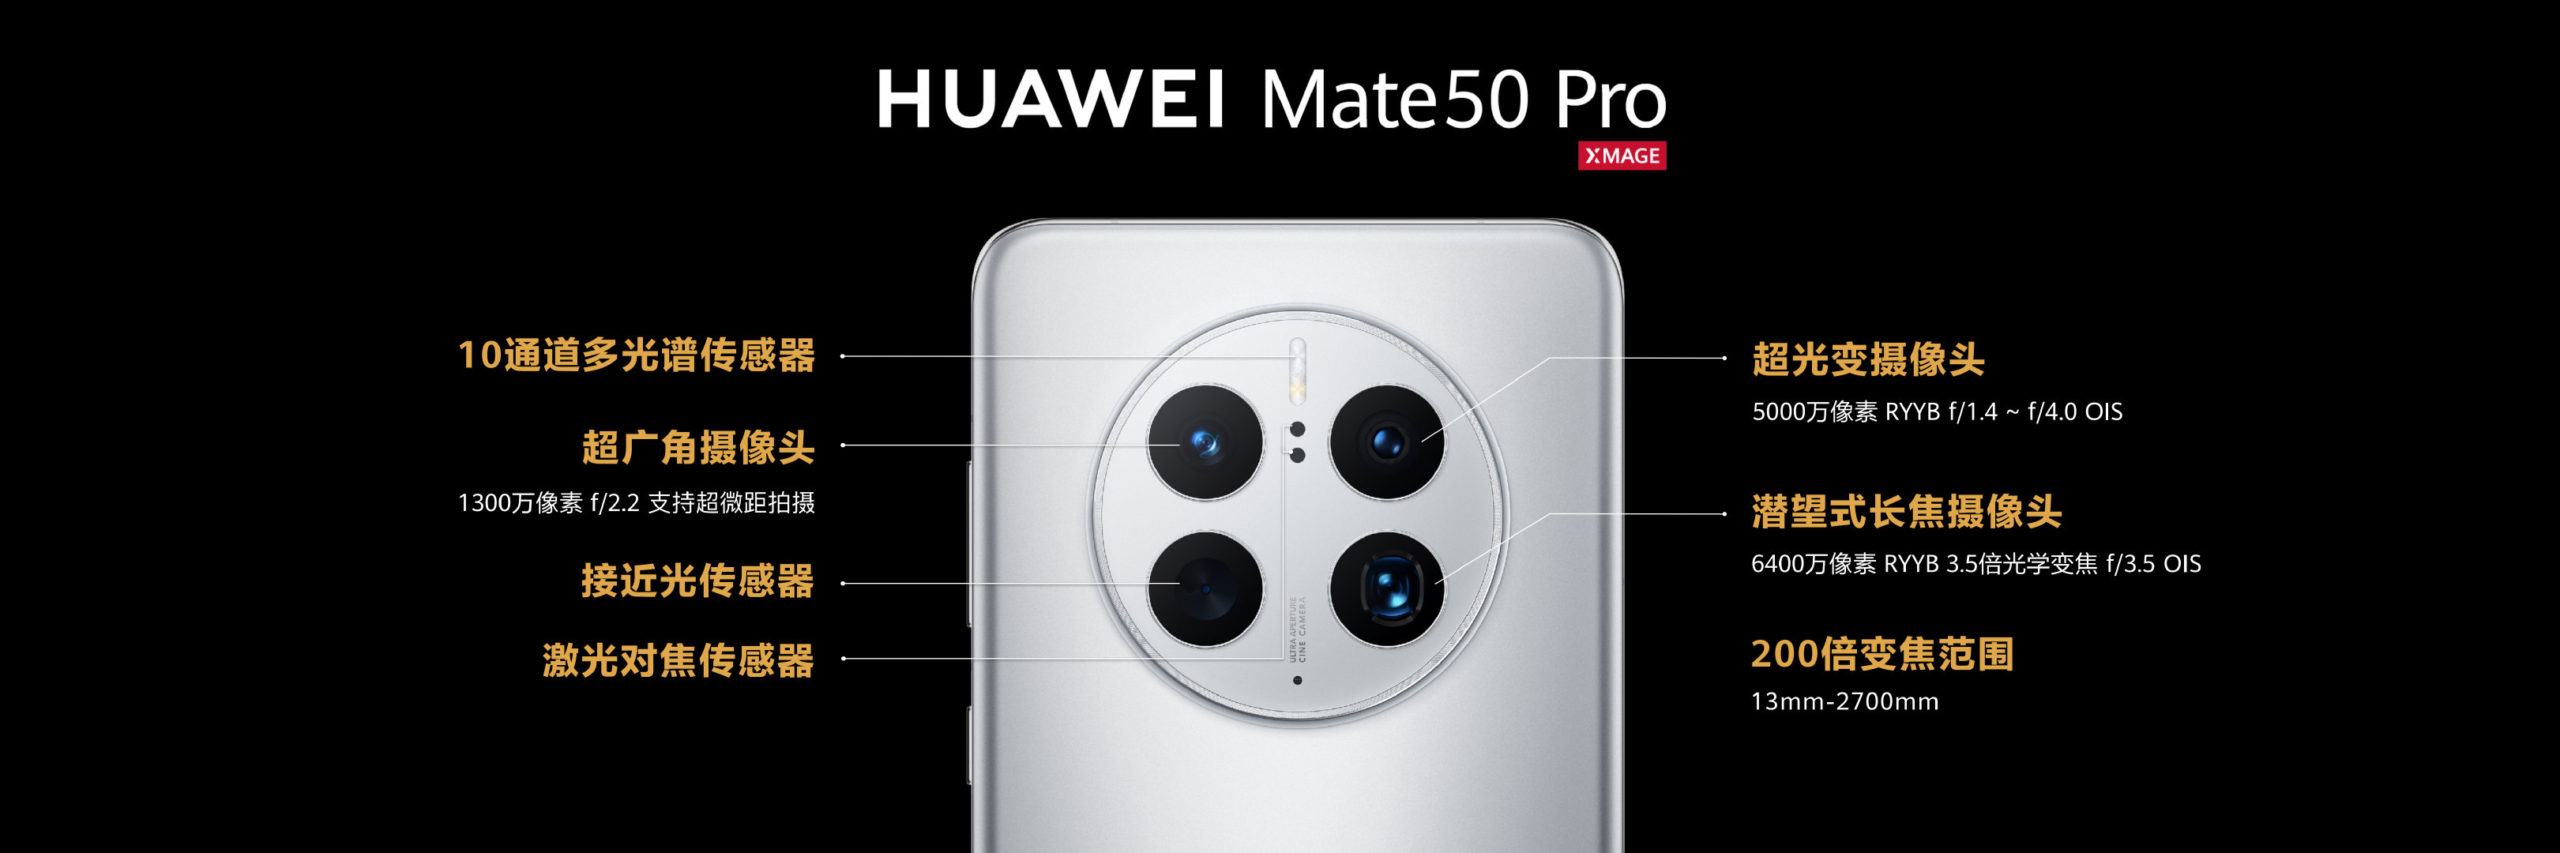 HUAWEI Mate 50 Pro dan Mate 50 kini rasmi dengan cip Snapdragon 8+ Gen 1 dan sistem komunikasi satelite 17